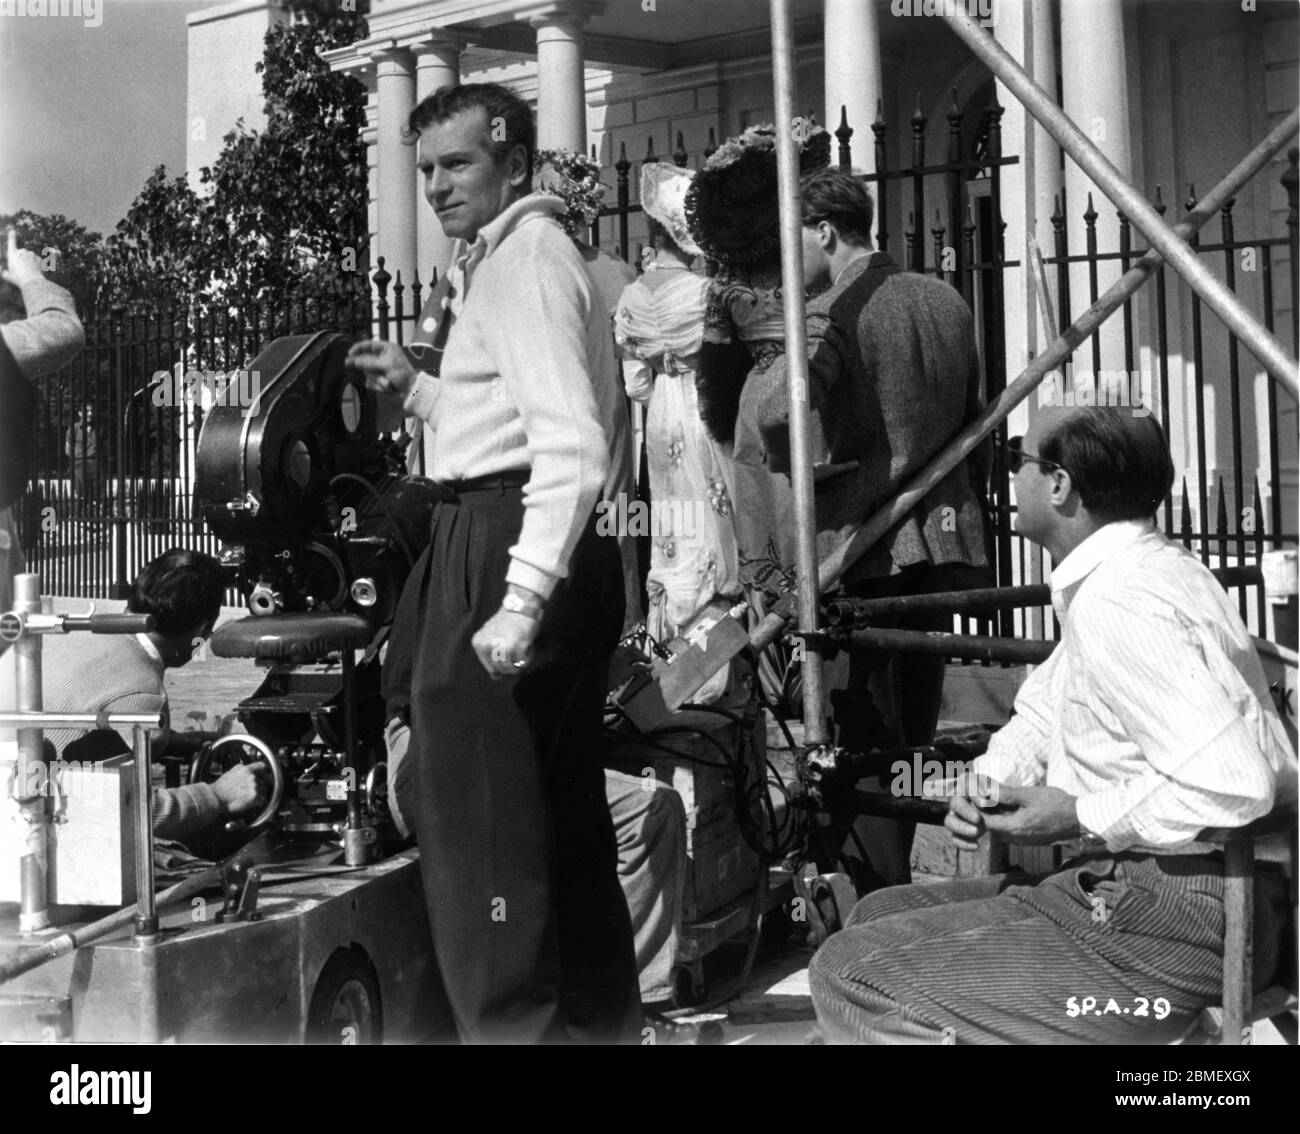 Le réalisateur LAURENCE OLIVIER et le cinéaste JACK CARDIFF (à droite en lunettes de soleil) avec l'équipe de caméra et des filles supplémentaires sur le plateau, en plein candif pendant le tournage du PRINCE ET DE LA DANSEUSE LAURENCE OLIVIER, jouer et scénario 1957, TERENCE RATTIGAN co-production UK-USA Marilyn Monroe Productions / Warner Bros. Banque D'Images